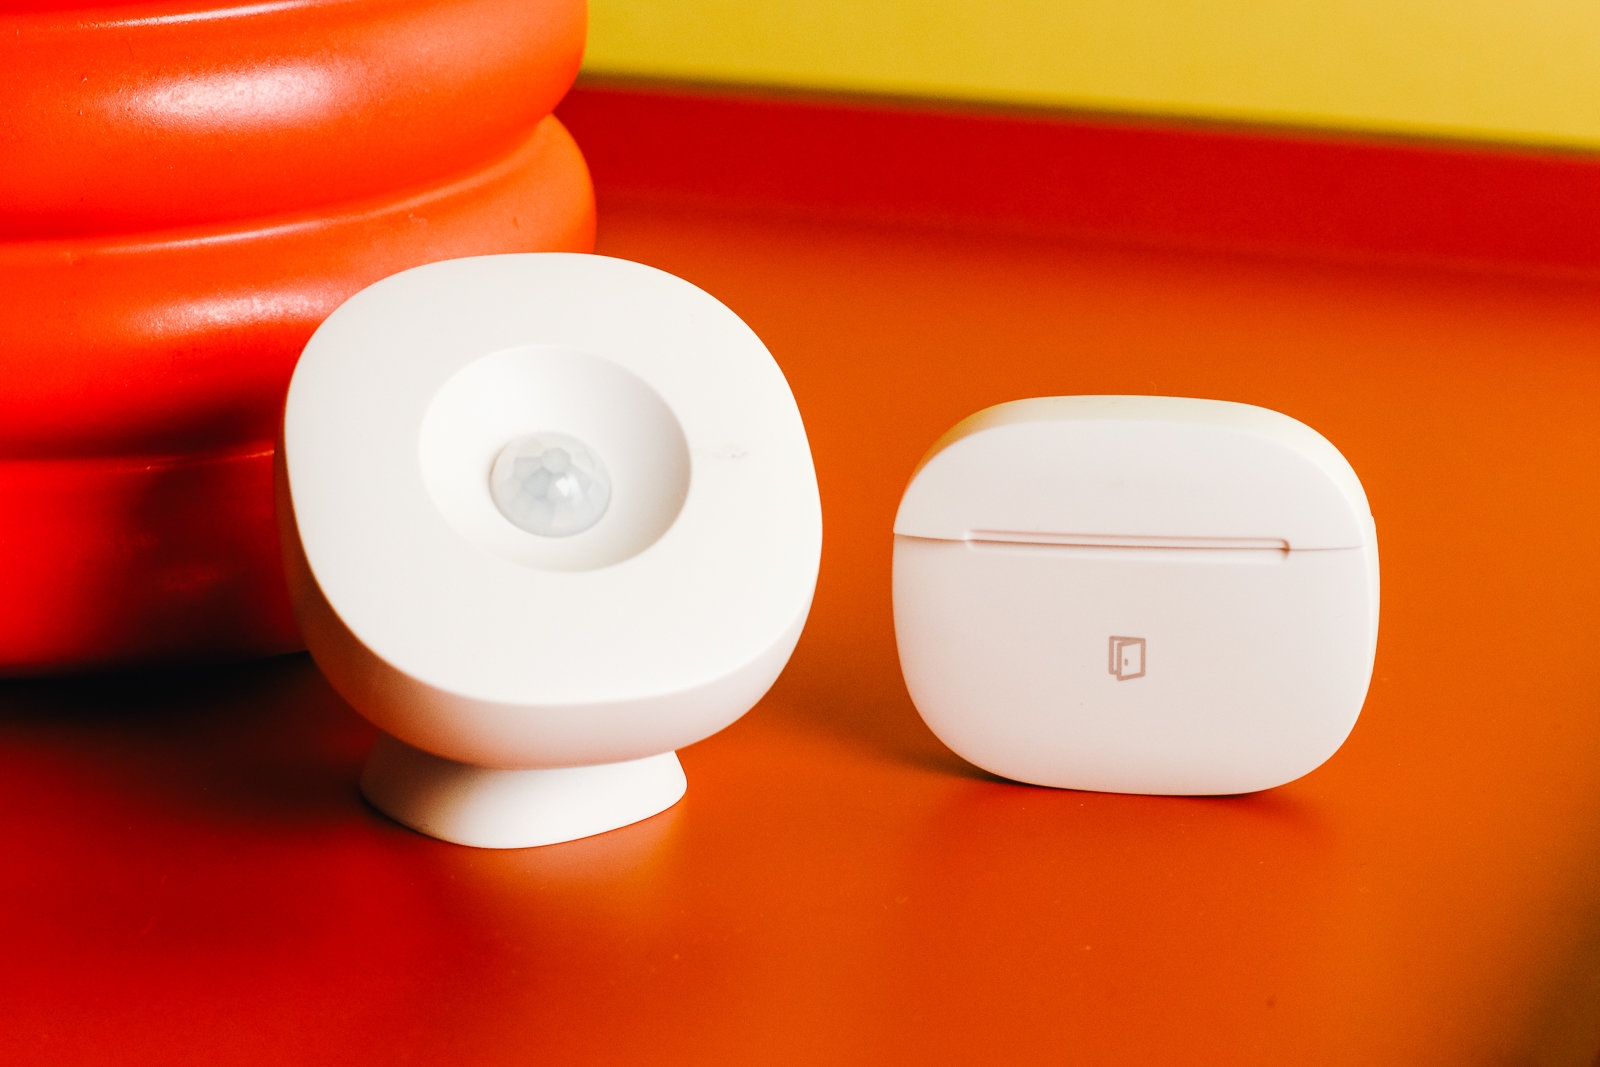 The best smart home sensors for Alexa | DeviceDaily.com